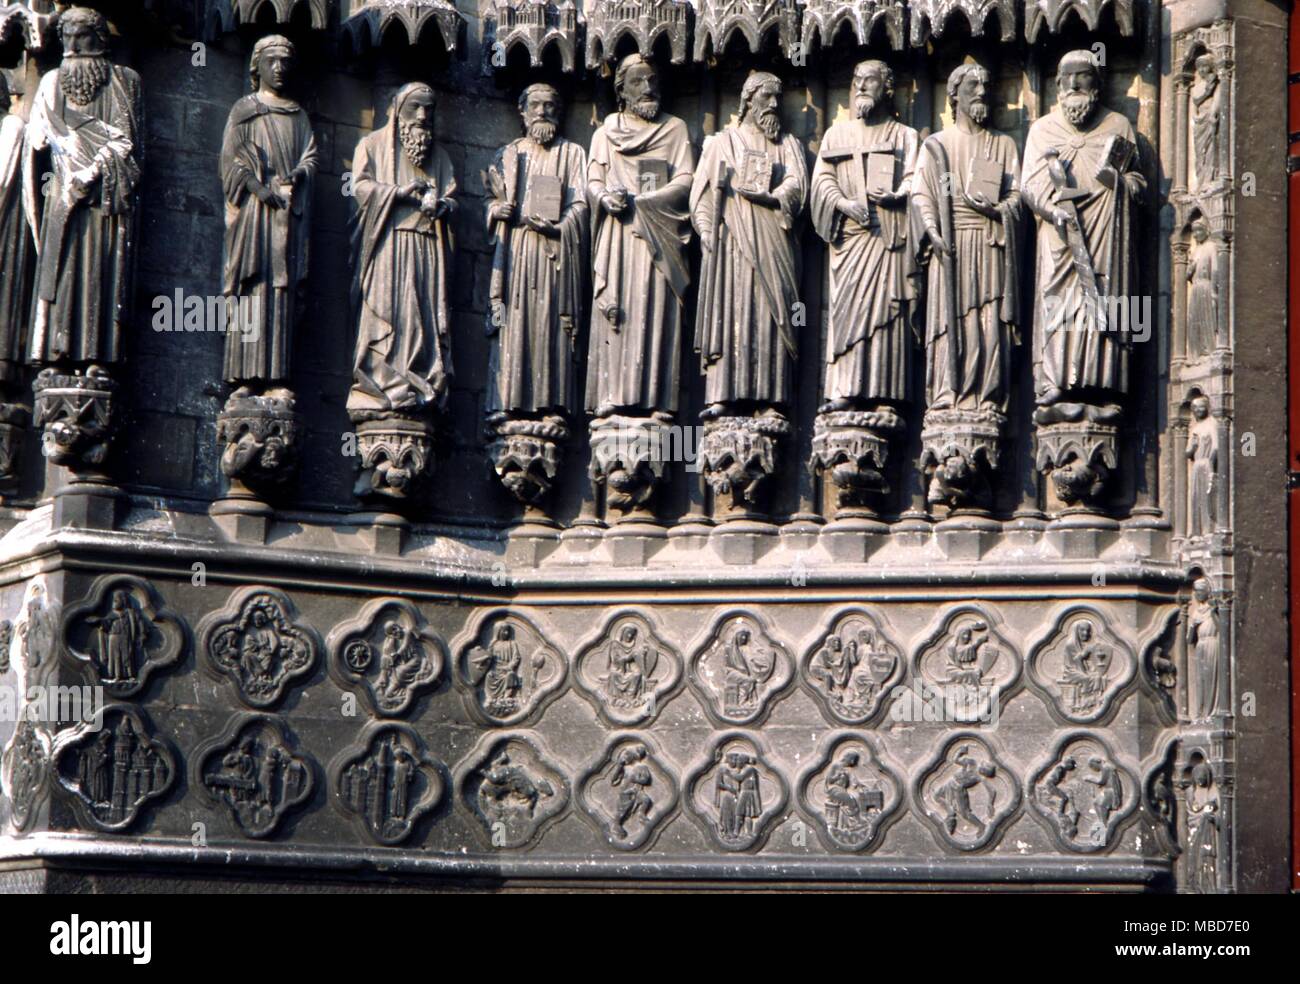 Die alchemistische Zentrales Portal der Kathedrale von Amiens. Für Details, siehe Fulcanelli's 'Le Mystere des Cathedrales', 1971. Stockfoto